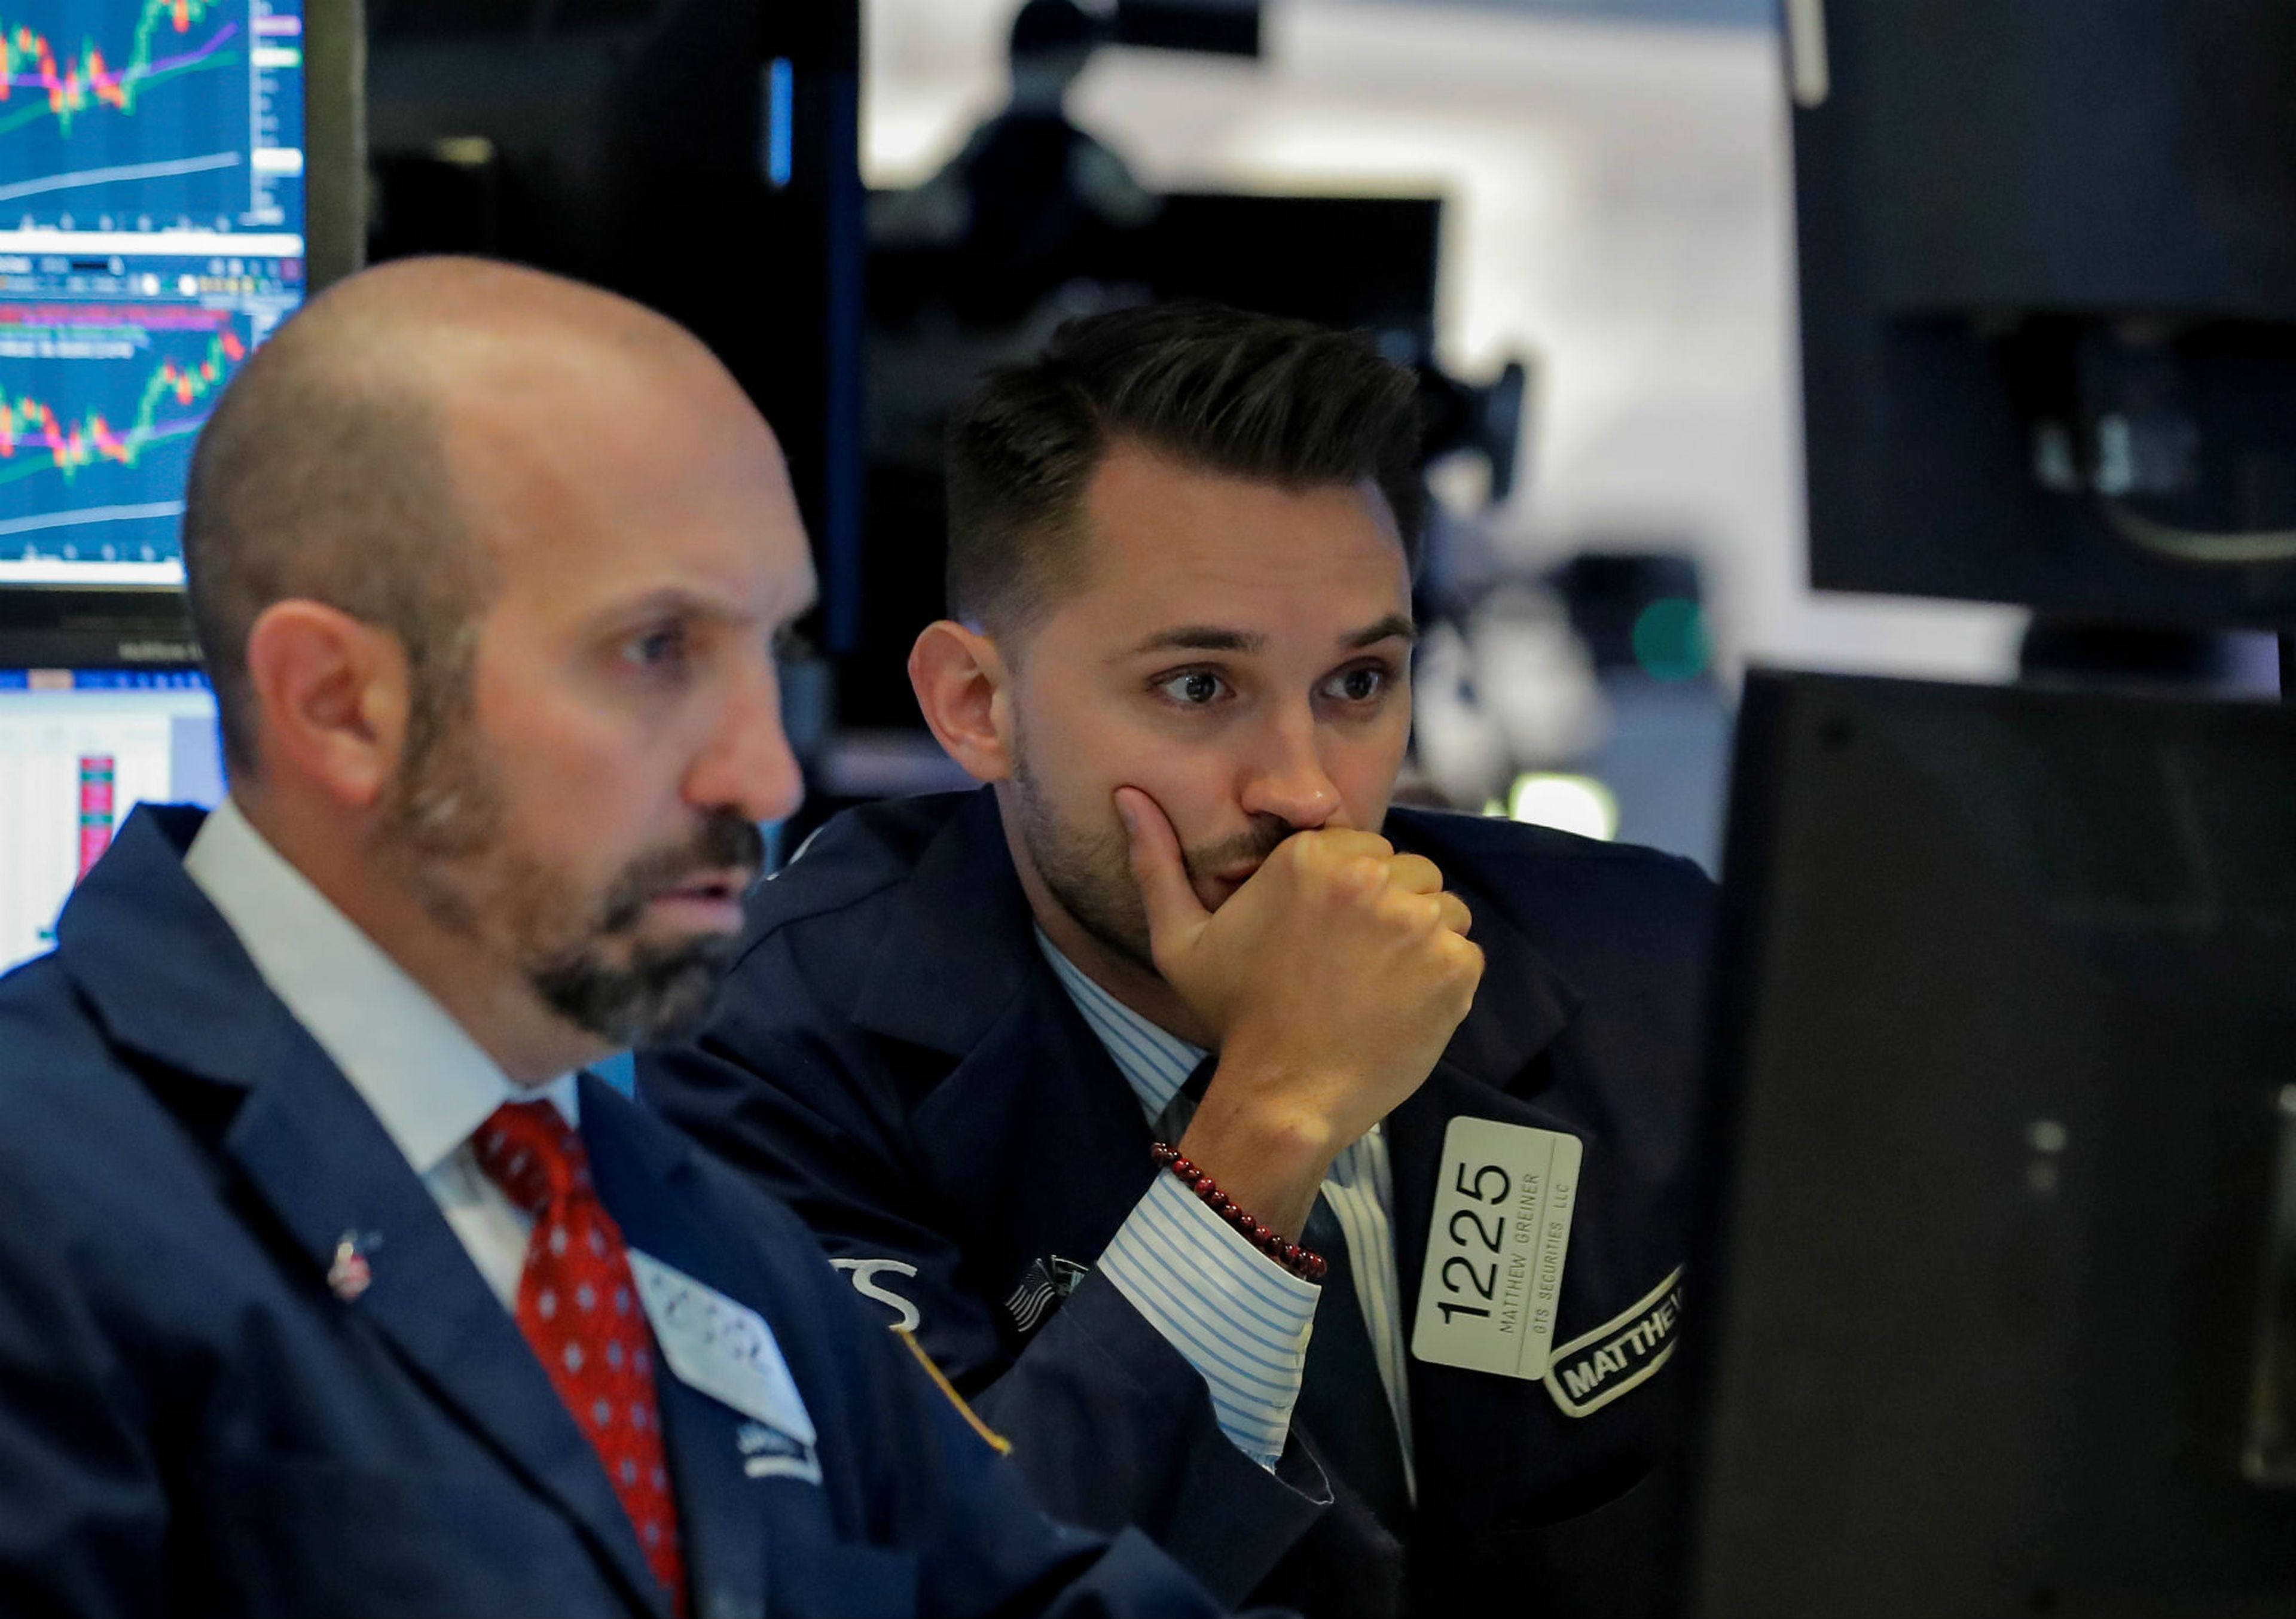 Dos traders en Wall Street mirando las pantallas de la cotización de la bolsa.